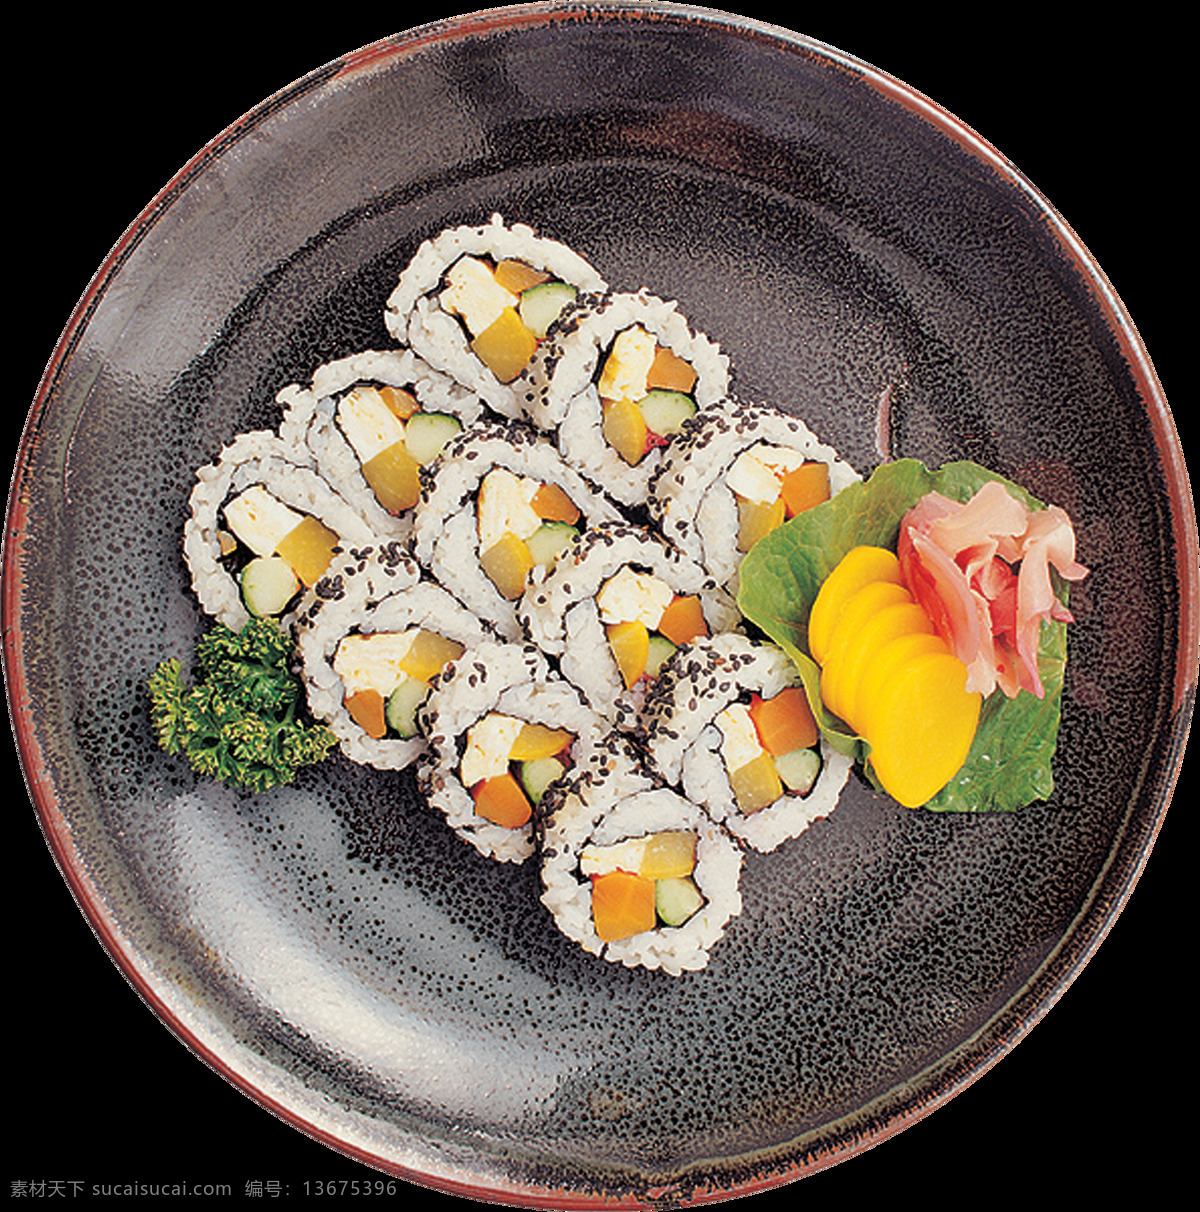 精美 寿司 卷 日式 料理 美食 产品 实物 产品实物 日本料理 日式美食 深色盘子